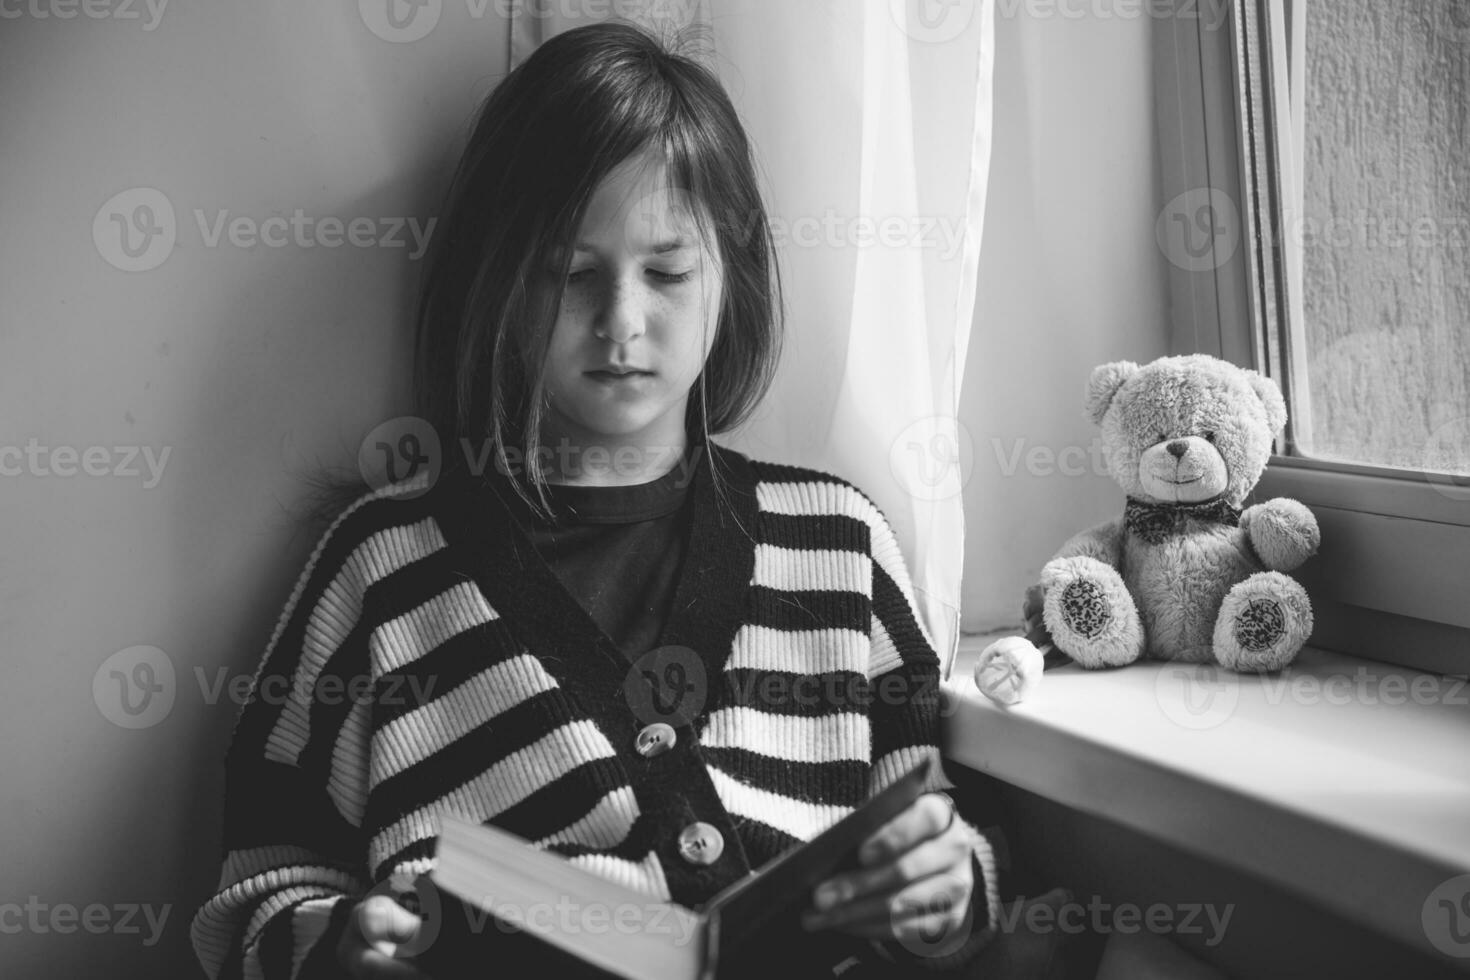 adolescent fille en train de lire une livre à Accueil par le fenêtre photo